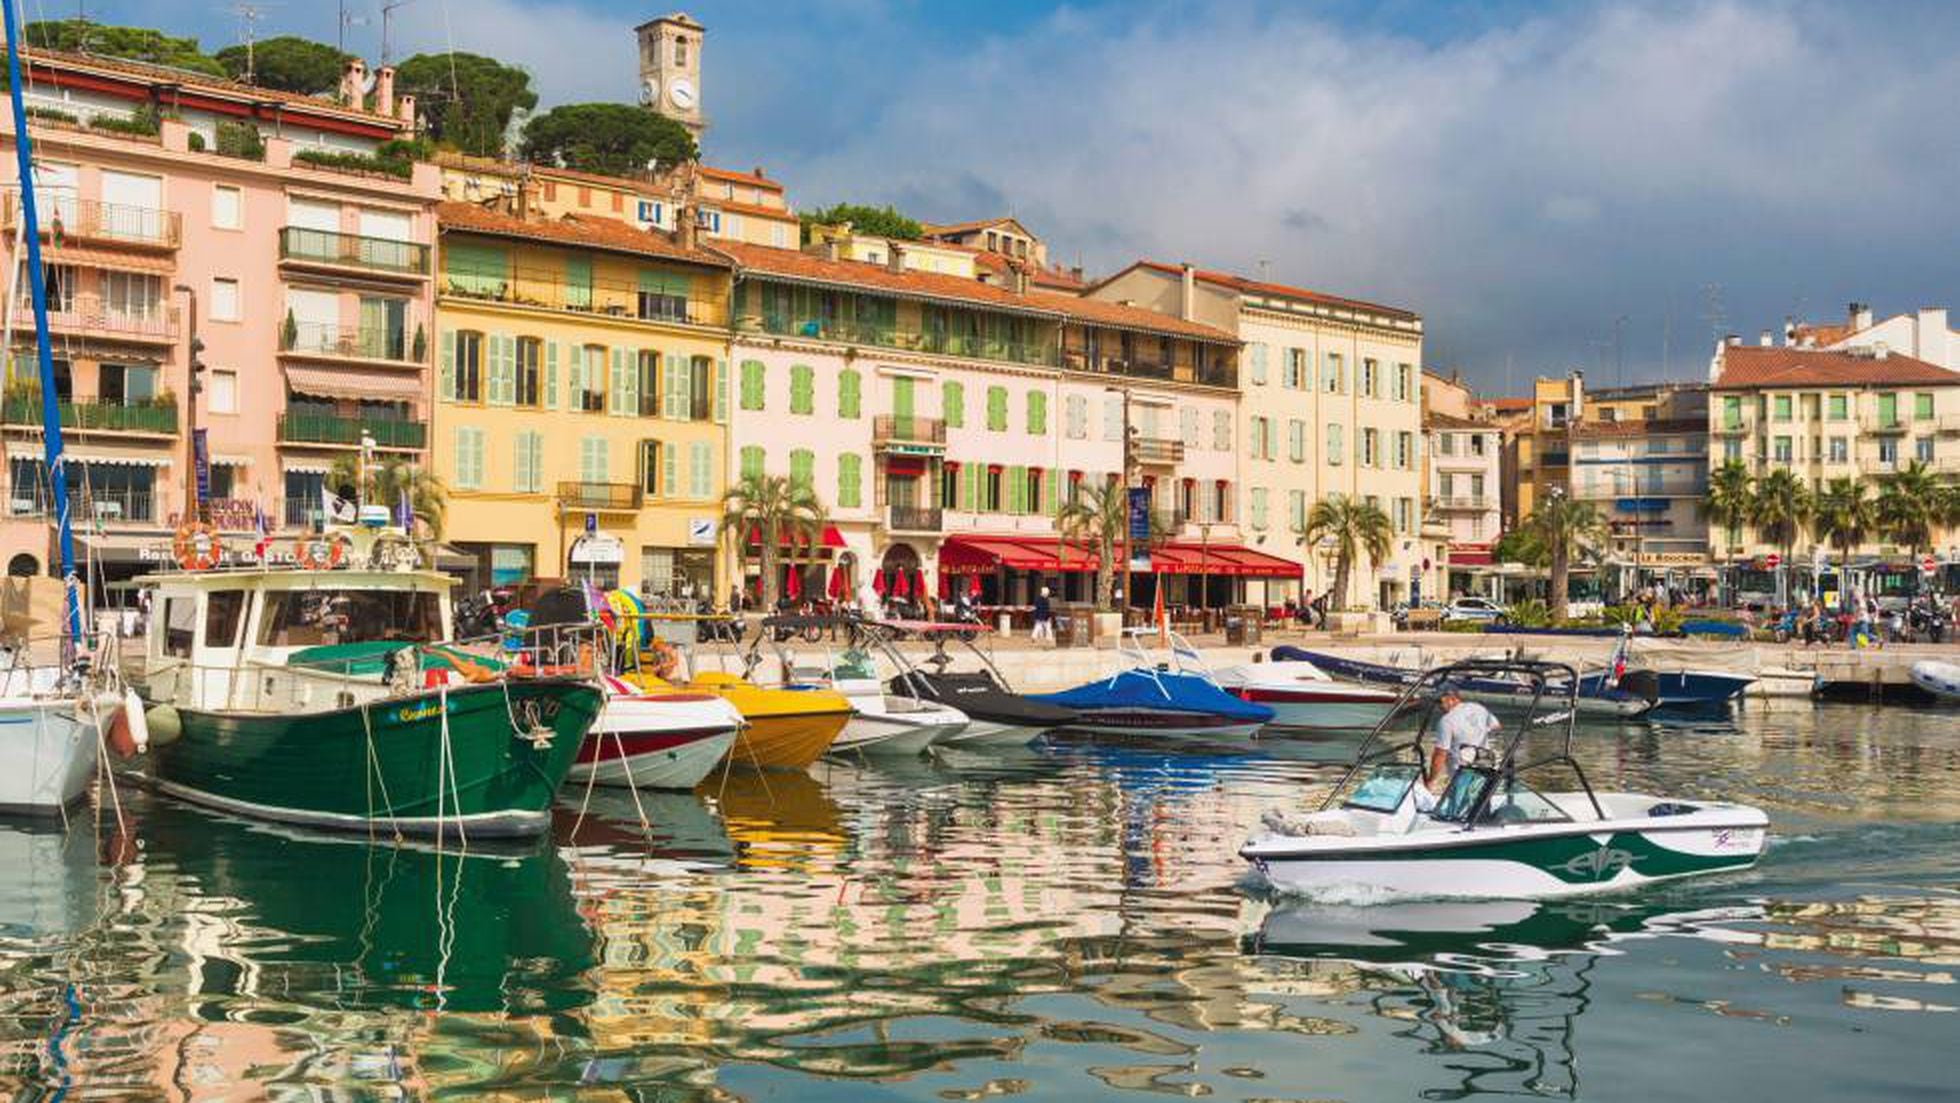 imán Hierbas reforma Francia: 24 horas en Cannes disfrutando del arte de vivir en la ciudad  francesa del cine | El Viajero | EL PAÍS